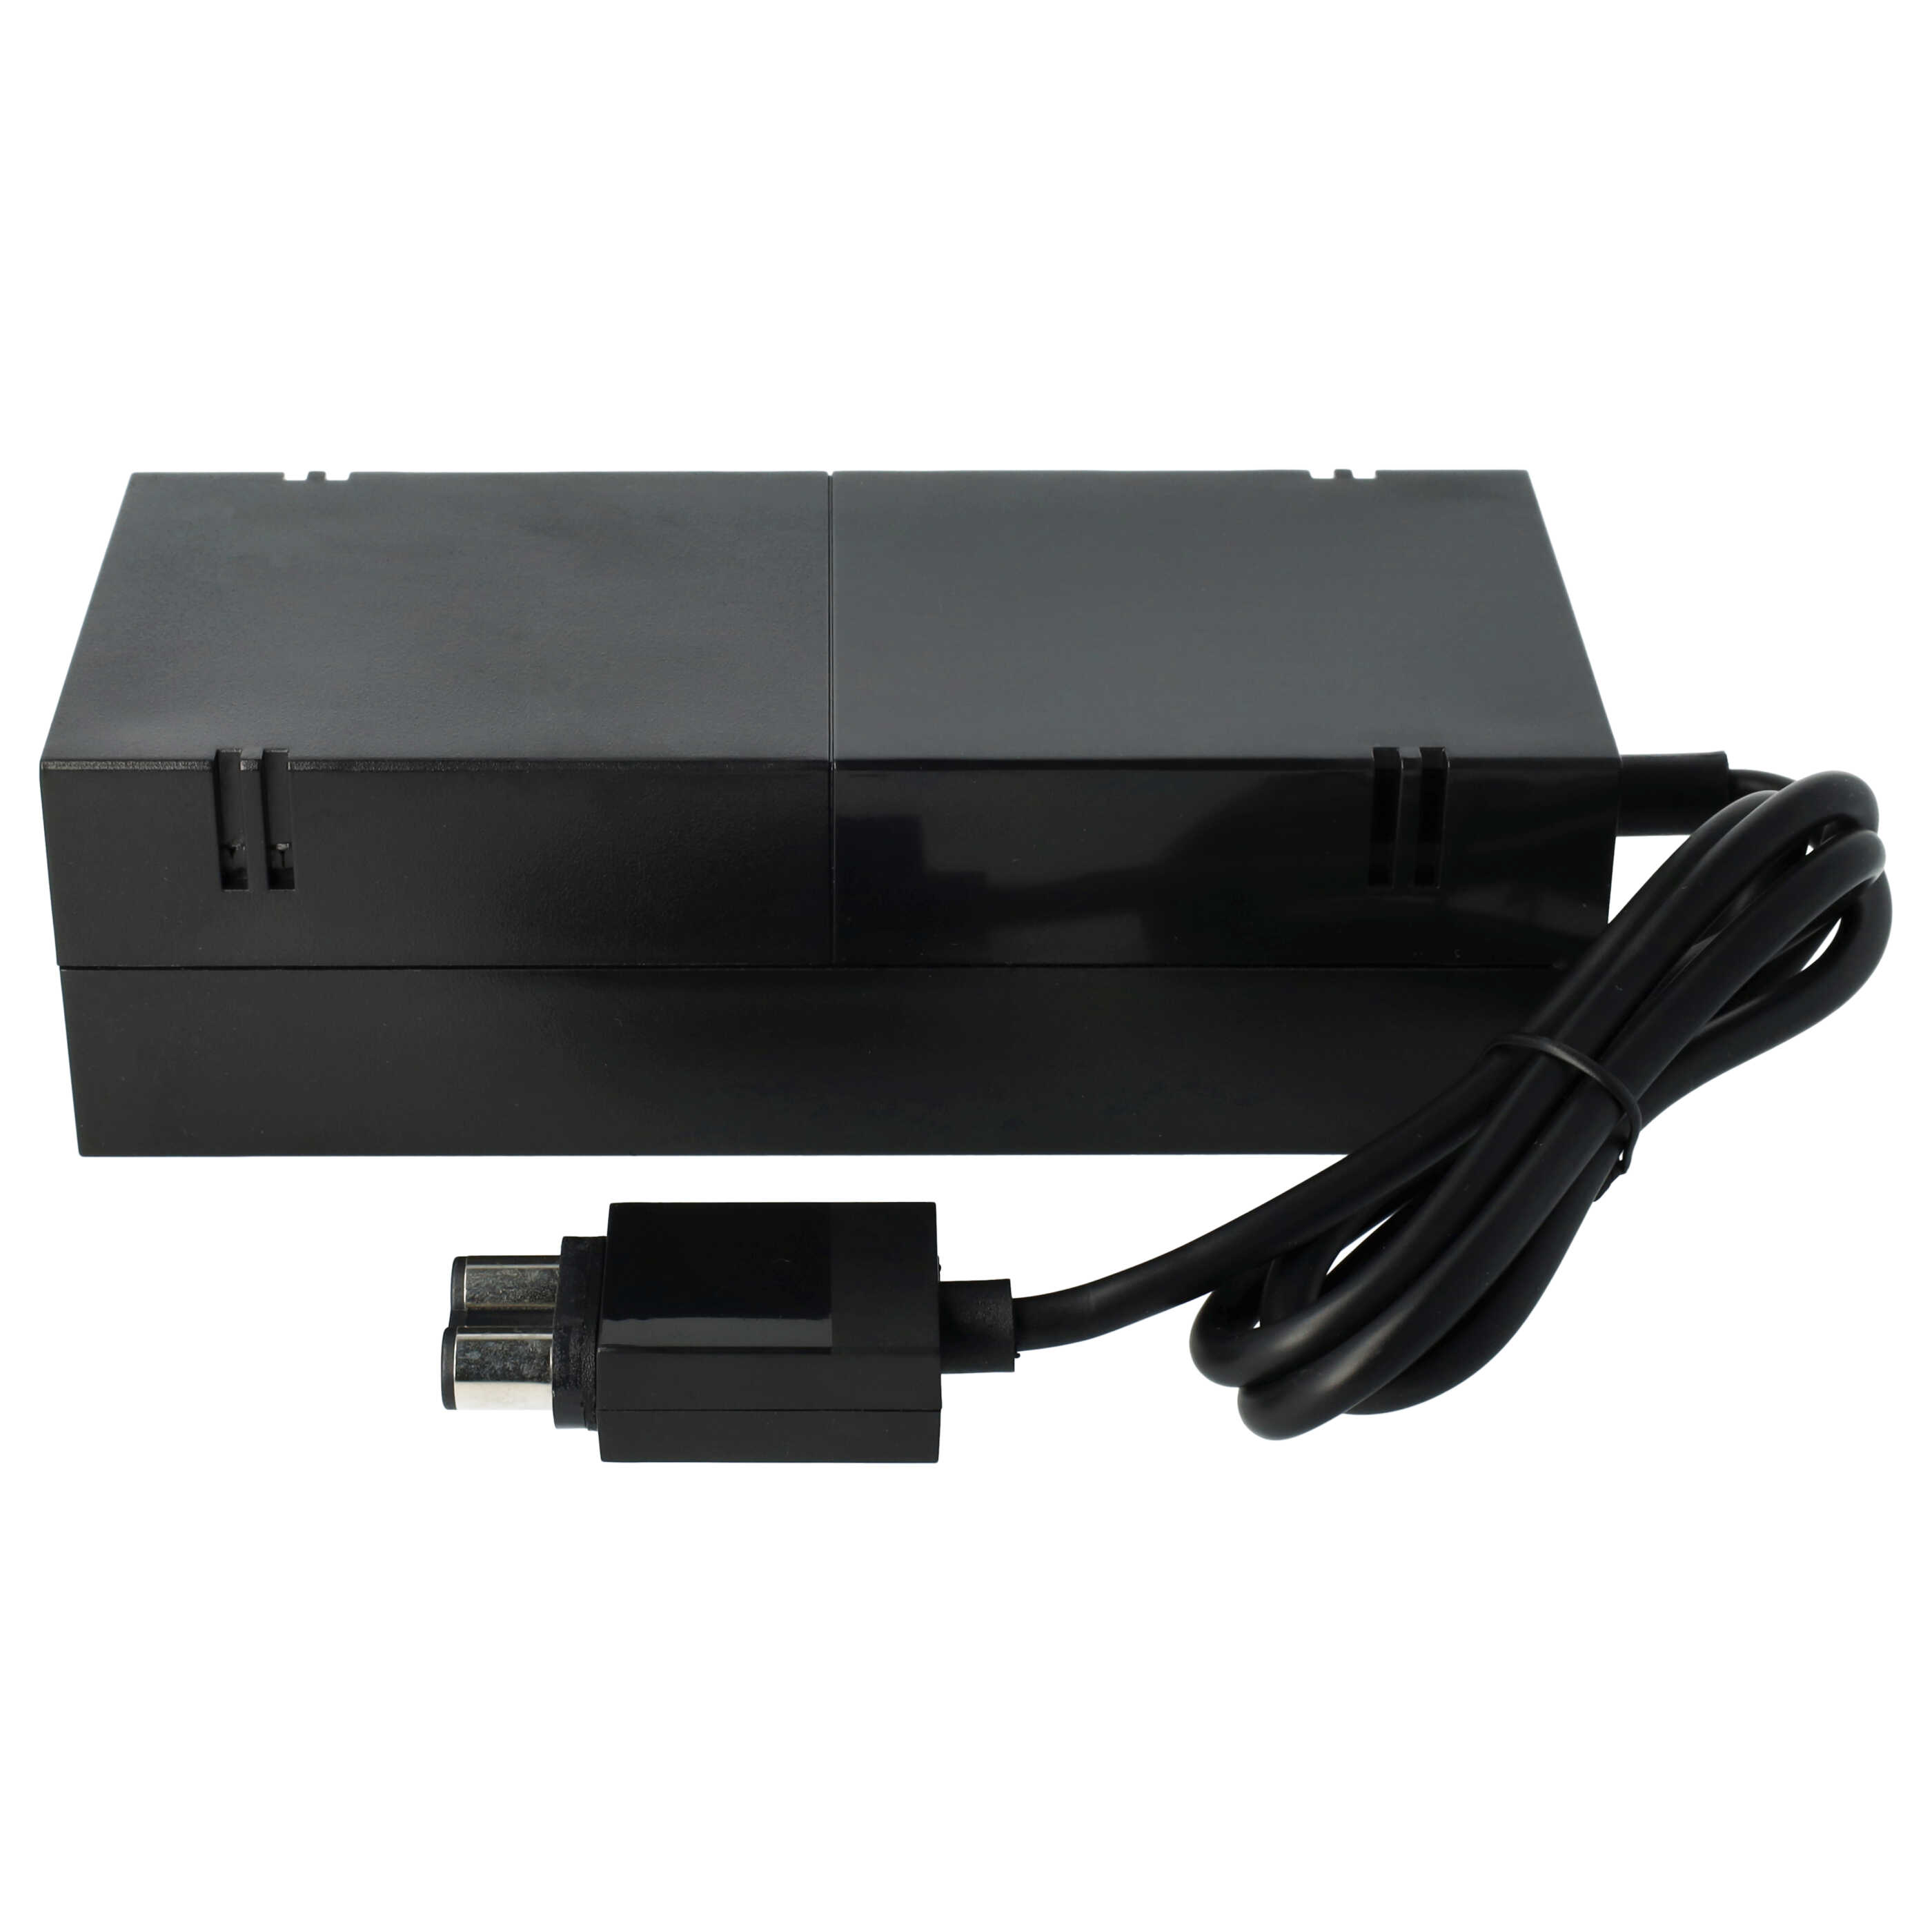 Bloc d'alimentation remplace Microsoft PE-2121-03M1 pour console de jeux vidéo Xbox One Microsoft - 190 cm